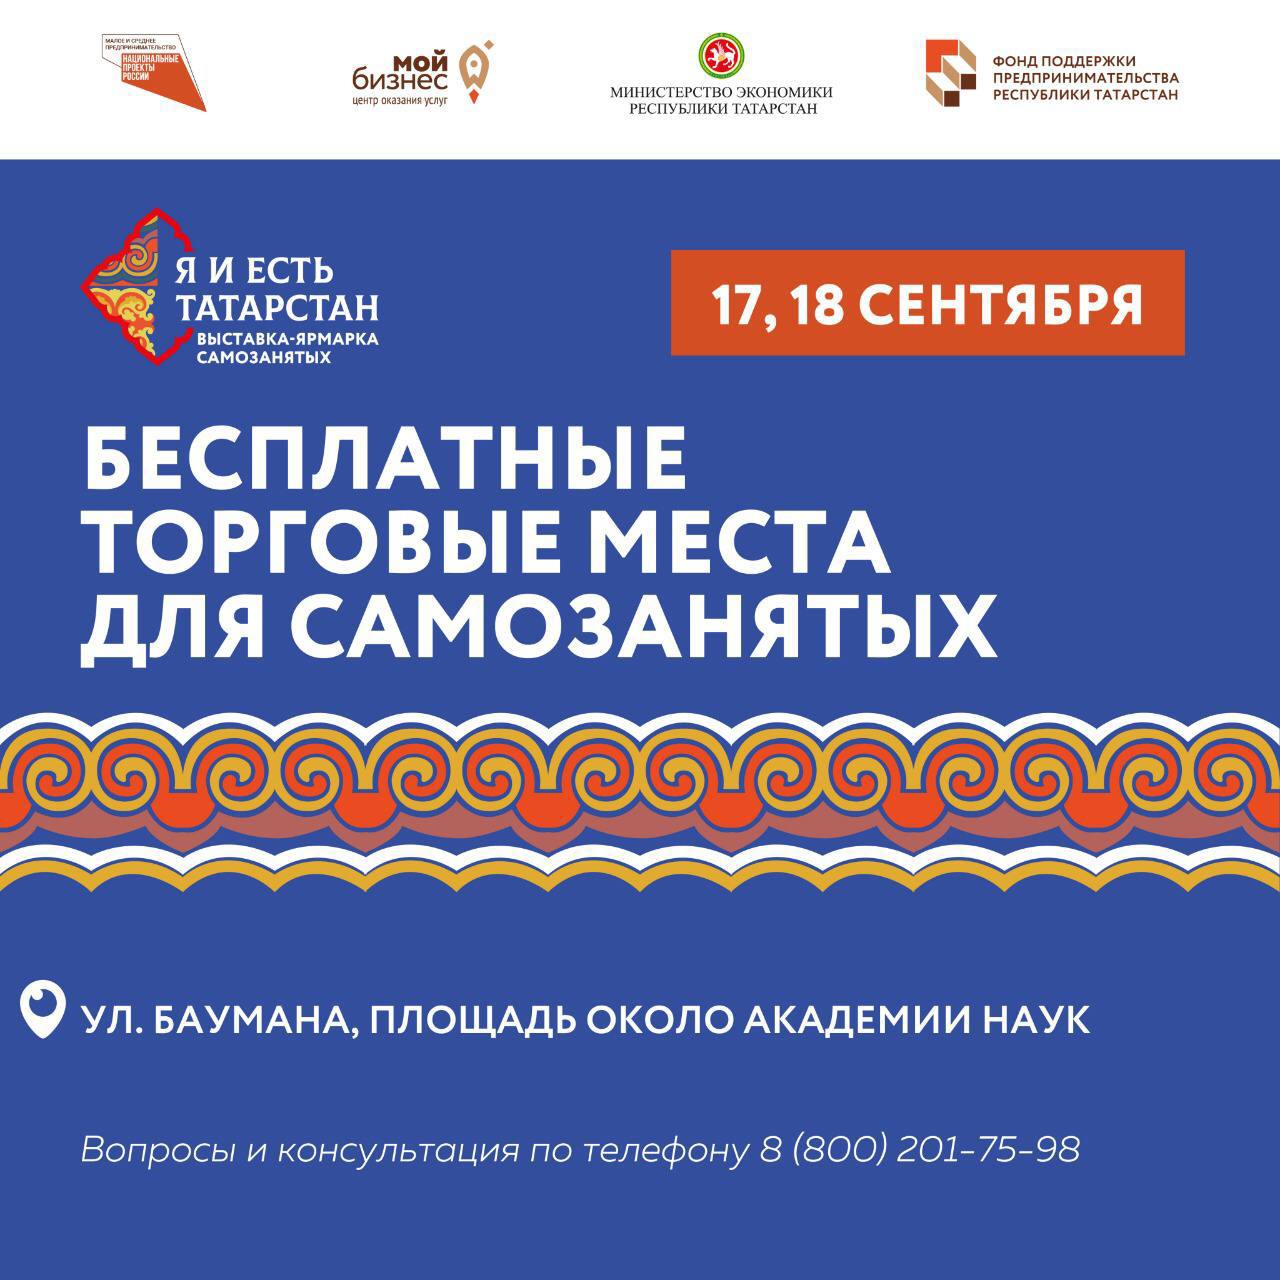 Ярмарка самозанятых «Я и есть Татарстан» пройдёт повторно 17 и 18 сентября!